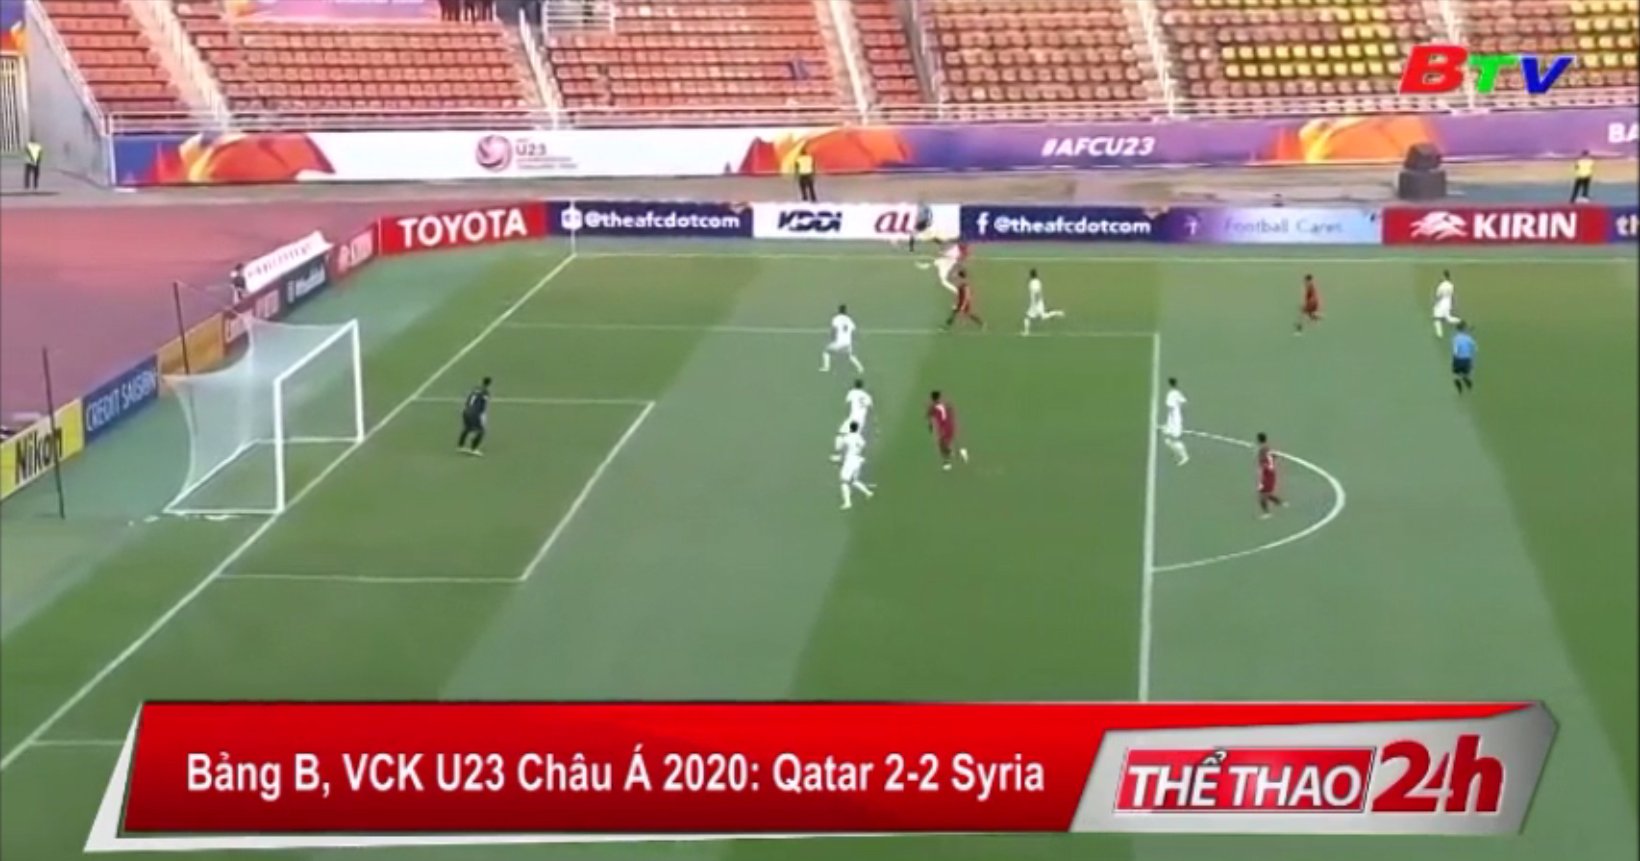 Bảng B, VCK U23 châu Á 2020 – Qatar 2-2 Syria